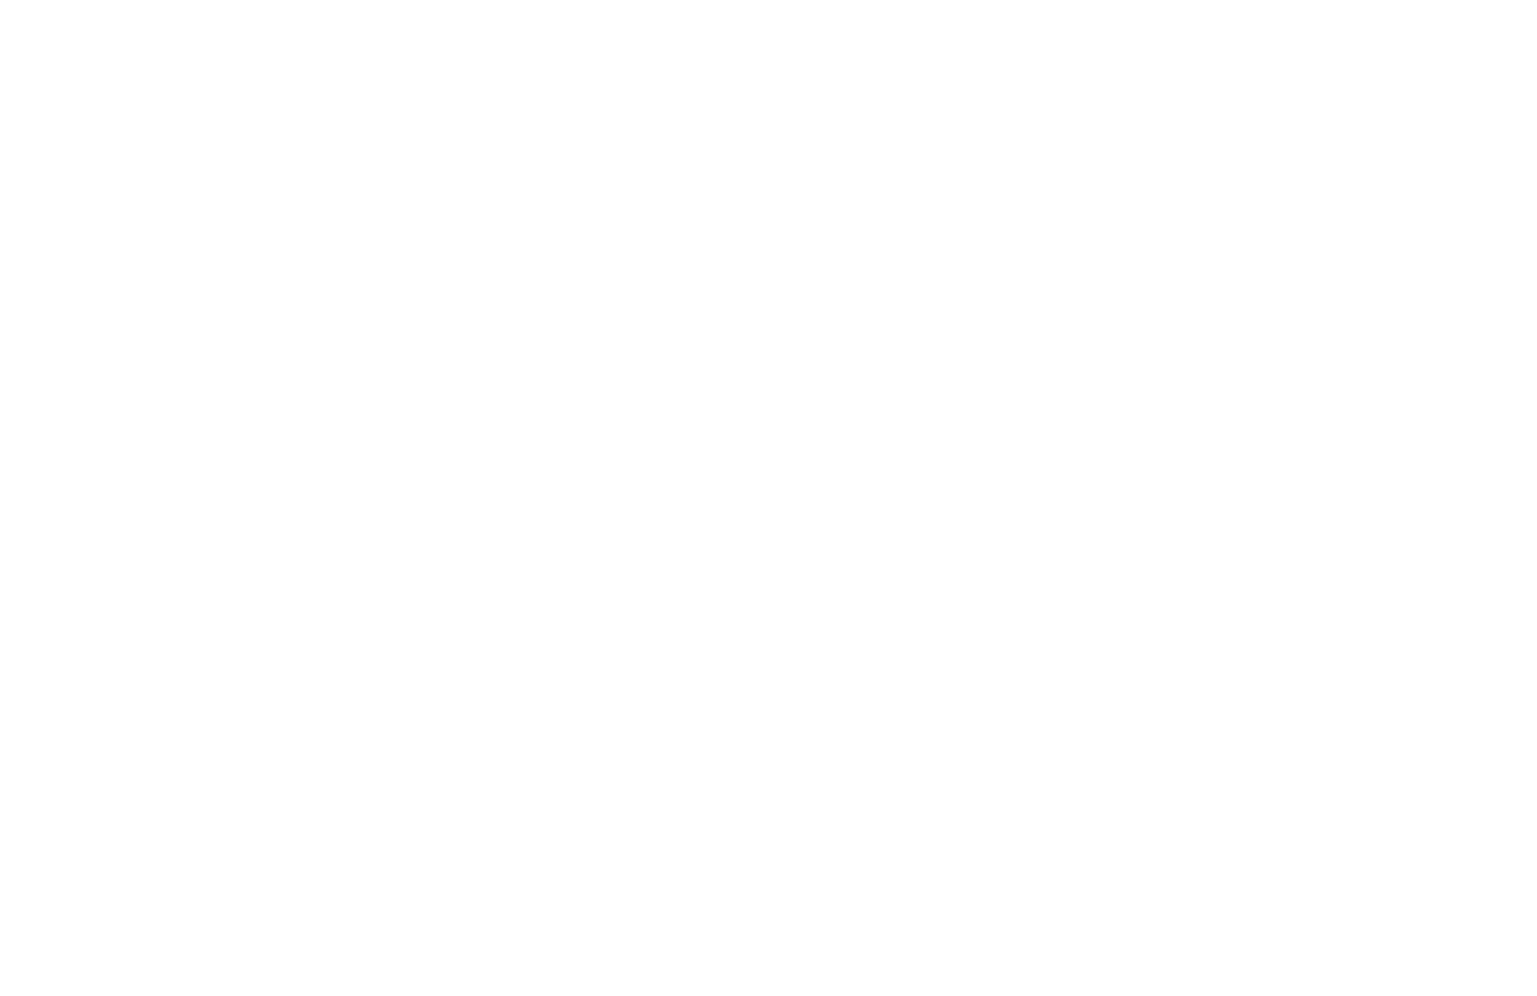 polskie hotele niezaleÅ¼ne